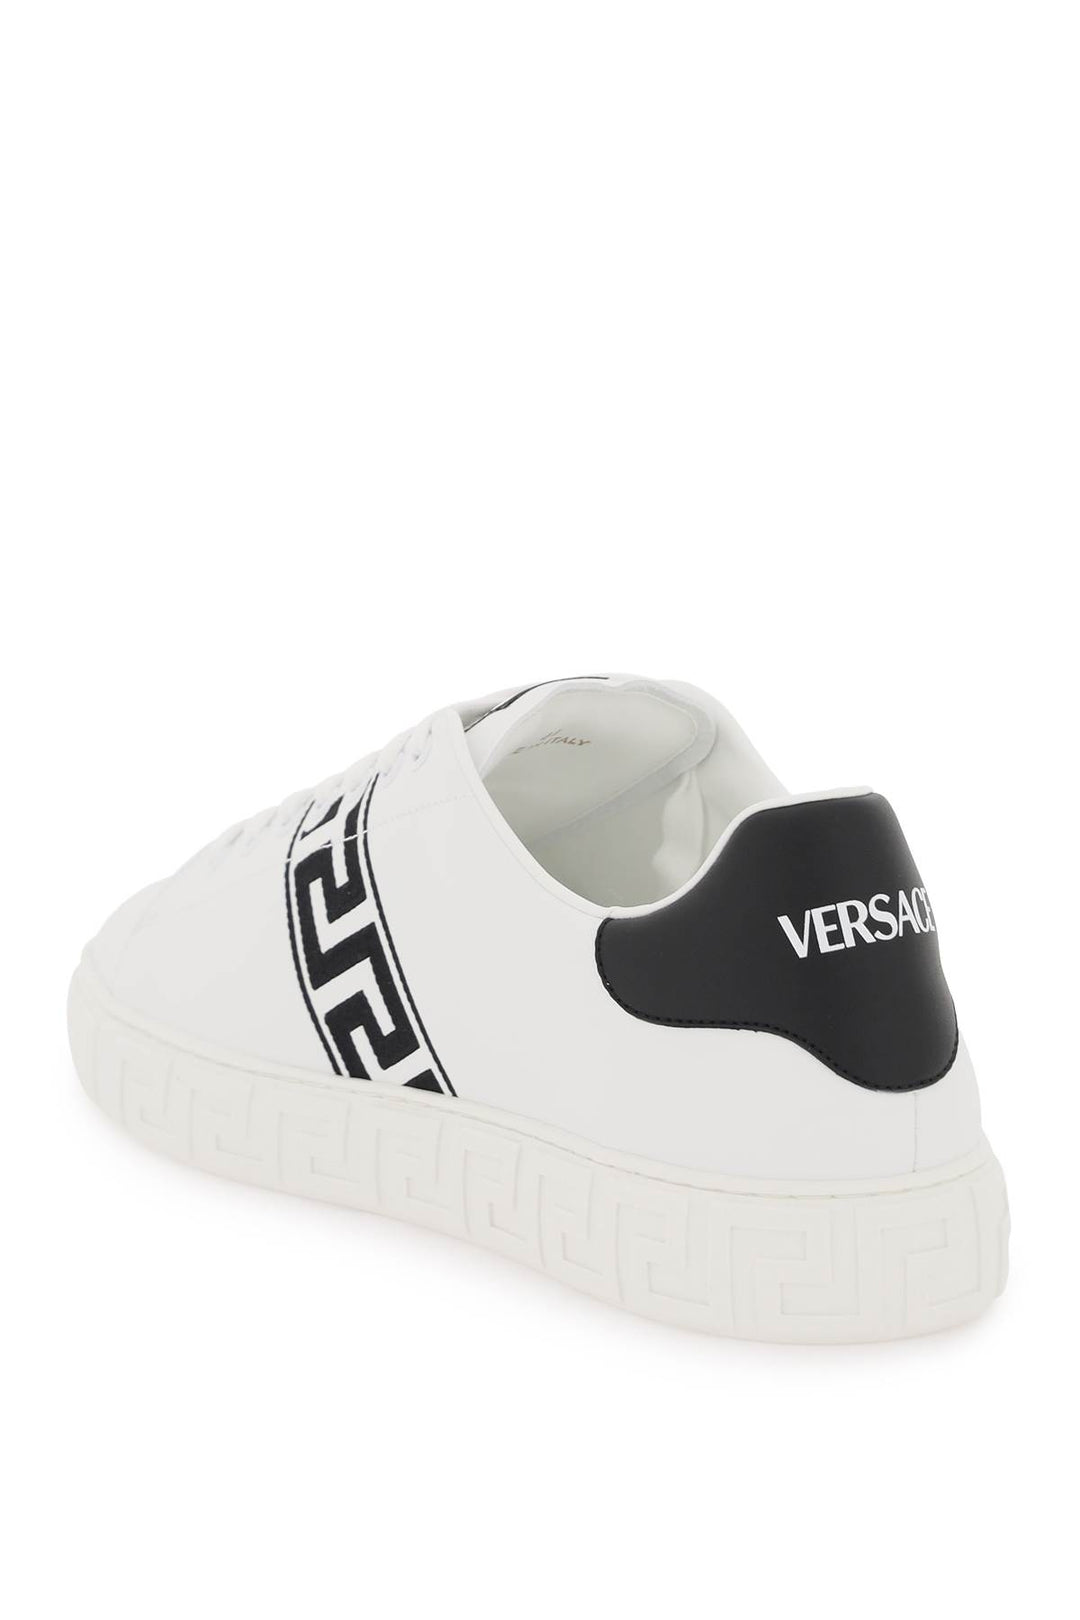 Versace Greca Sneakers   Bianco